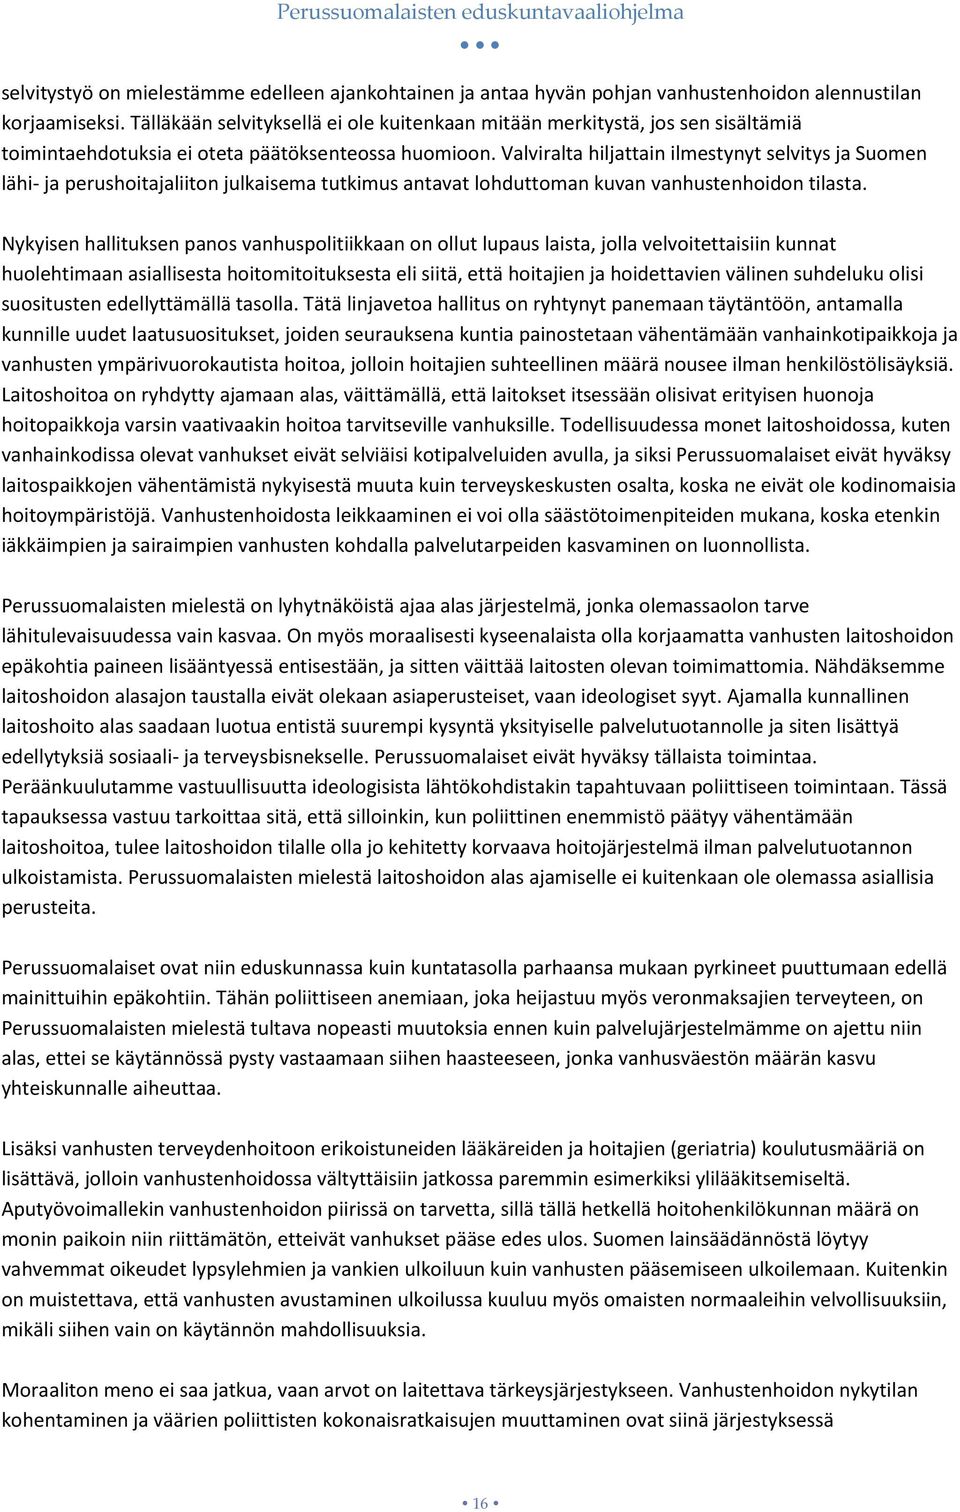 Valviralta hiljattain ilmestynyt selvitys ja Suomen lähi- ja perushoitajaliiton julkaisema tutkimus antavat lohduttoman kuvan vanhustenhoidon tilasta.